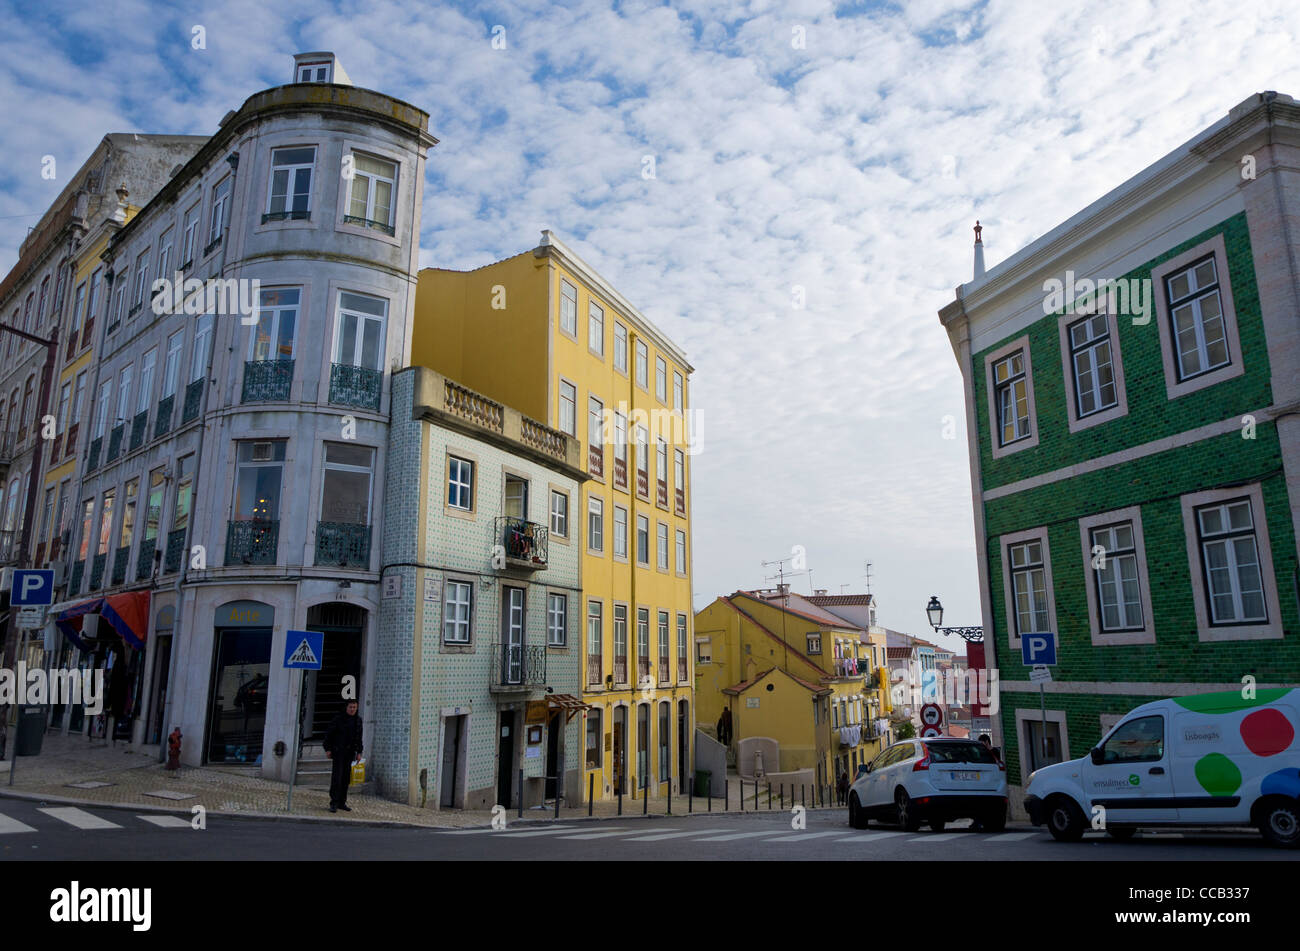 Principe Real square. Bairro Alto. Lisbon. Portugal Stock Photo